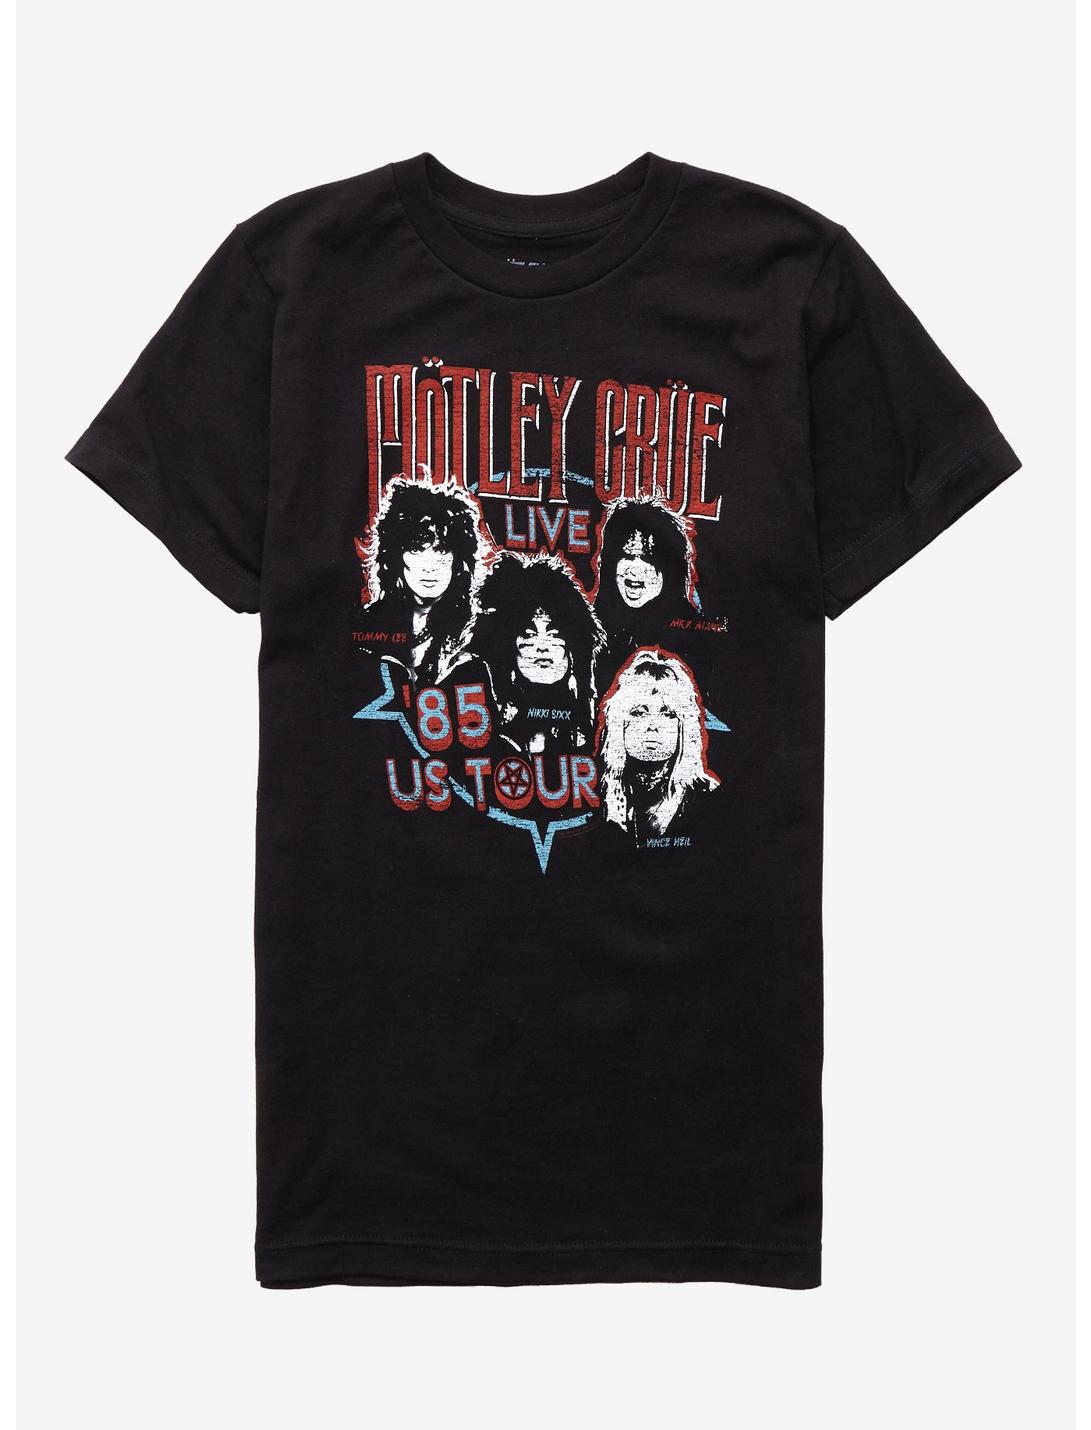 Motley Crue '85 Tour Girls T-shirt, BLACK, hi-res